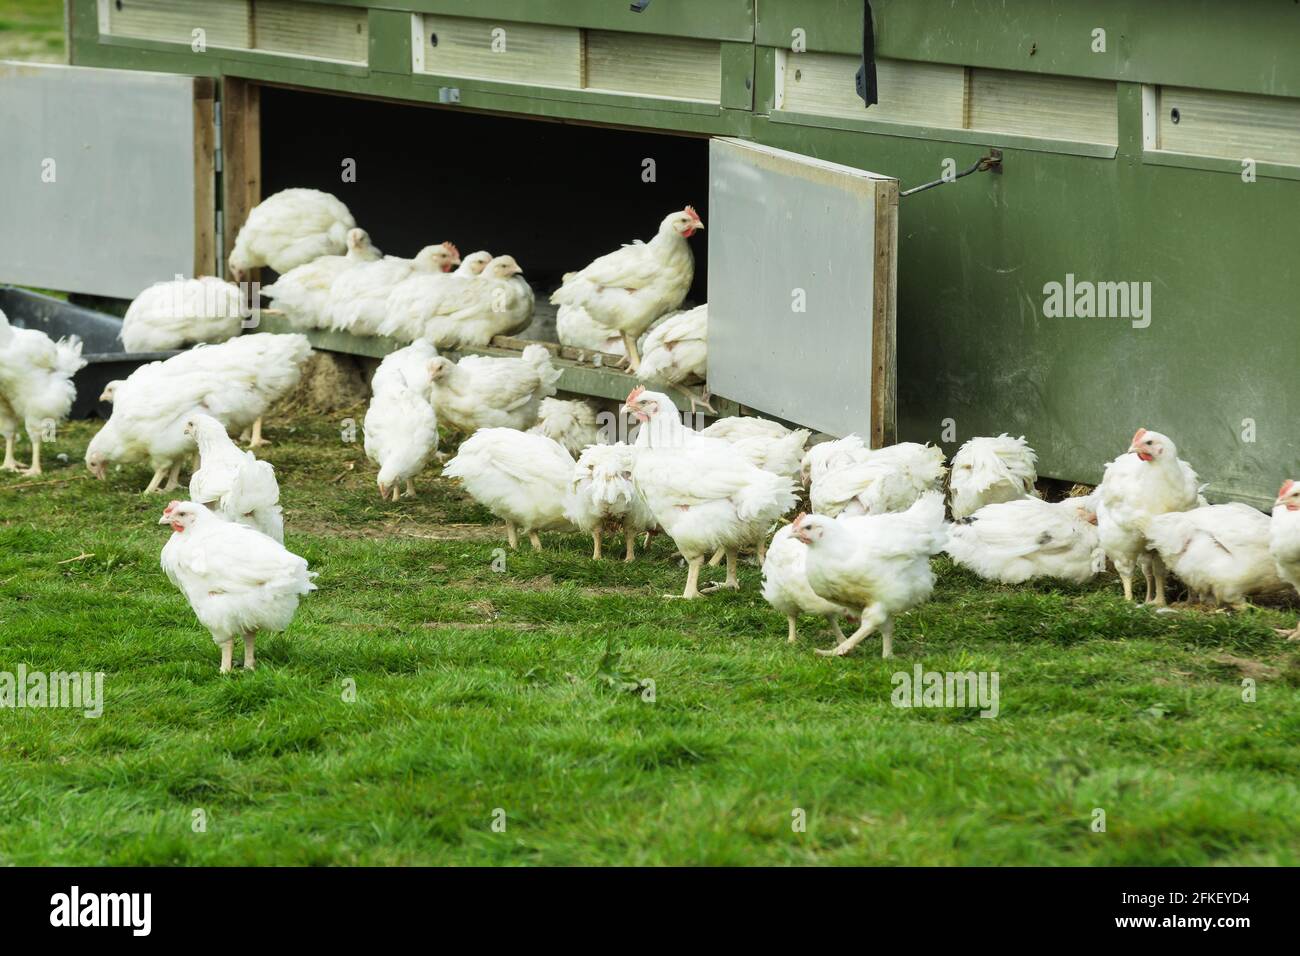 Se permite que los pollos orgánicos de la gama libre vivan un más vida natural al aire libre y proporcionando una buena calidad de vida En una granja orgánica en el Reino Unido Foto de stock